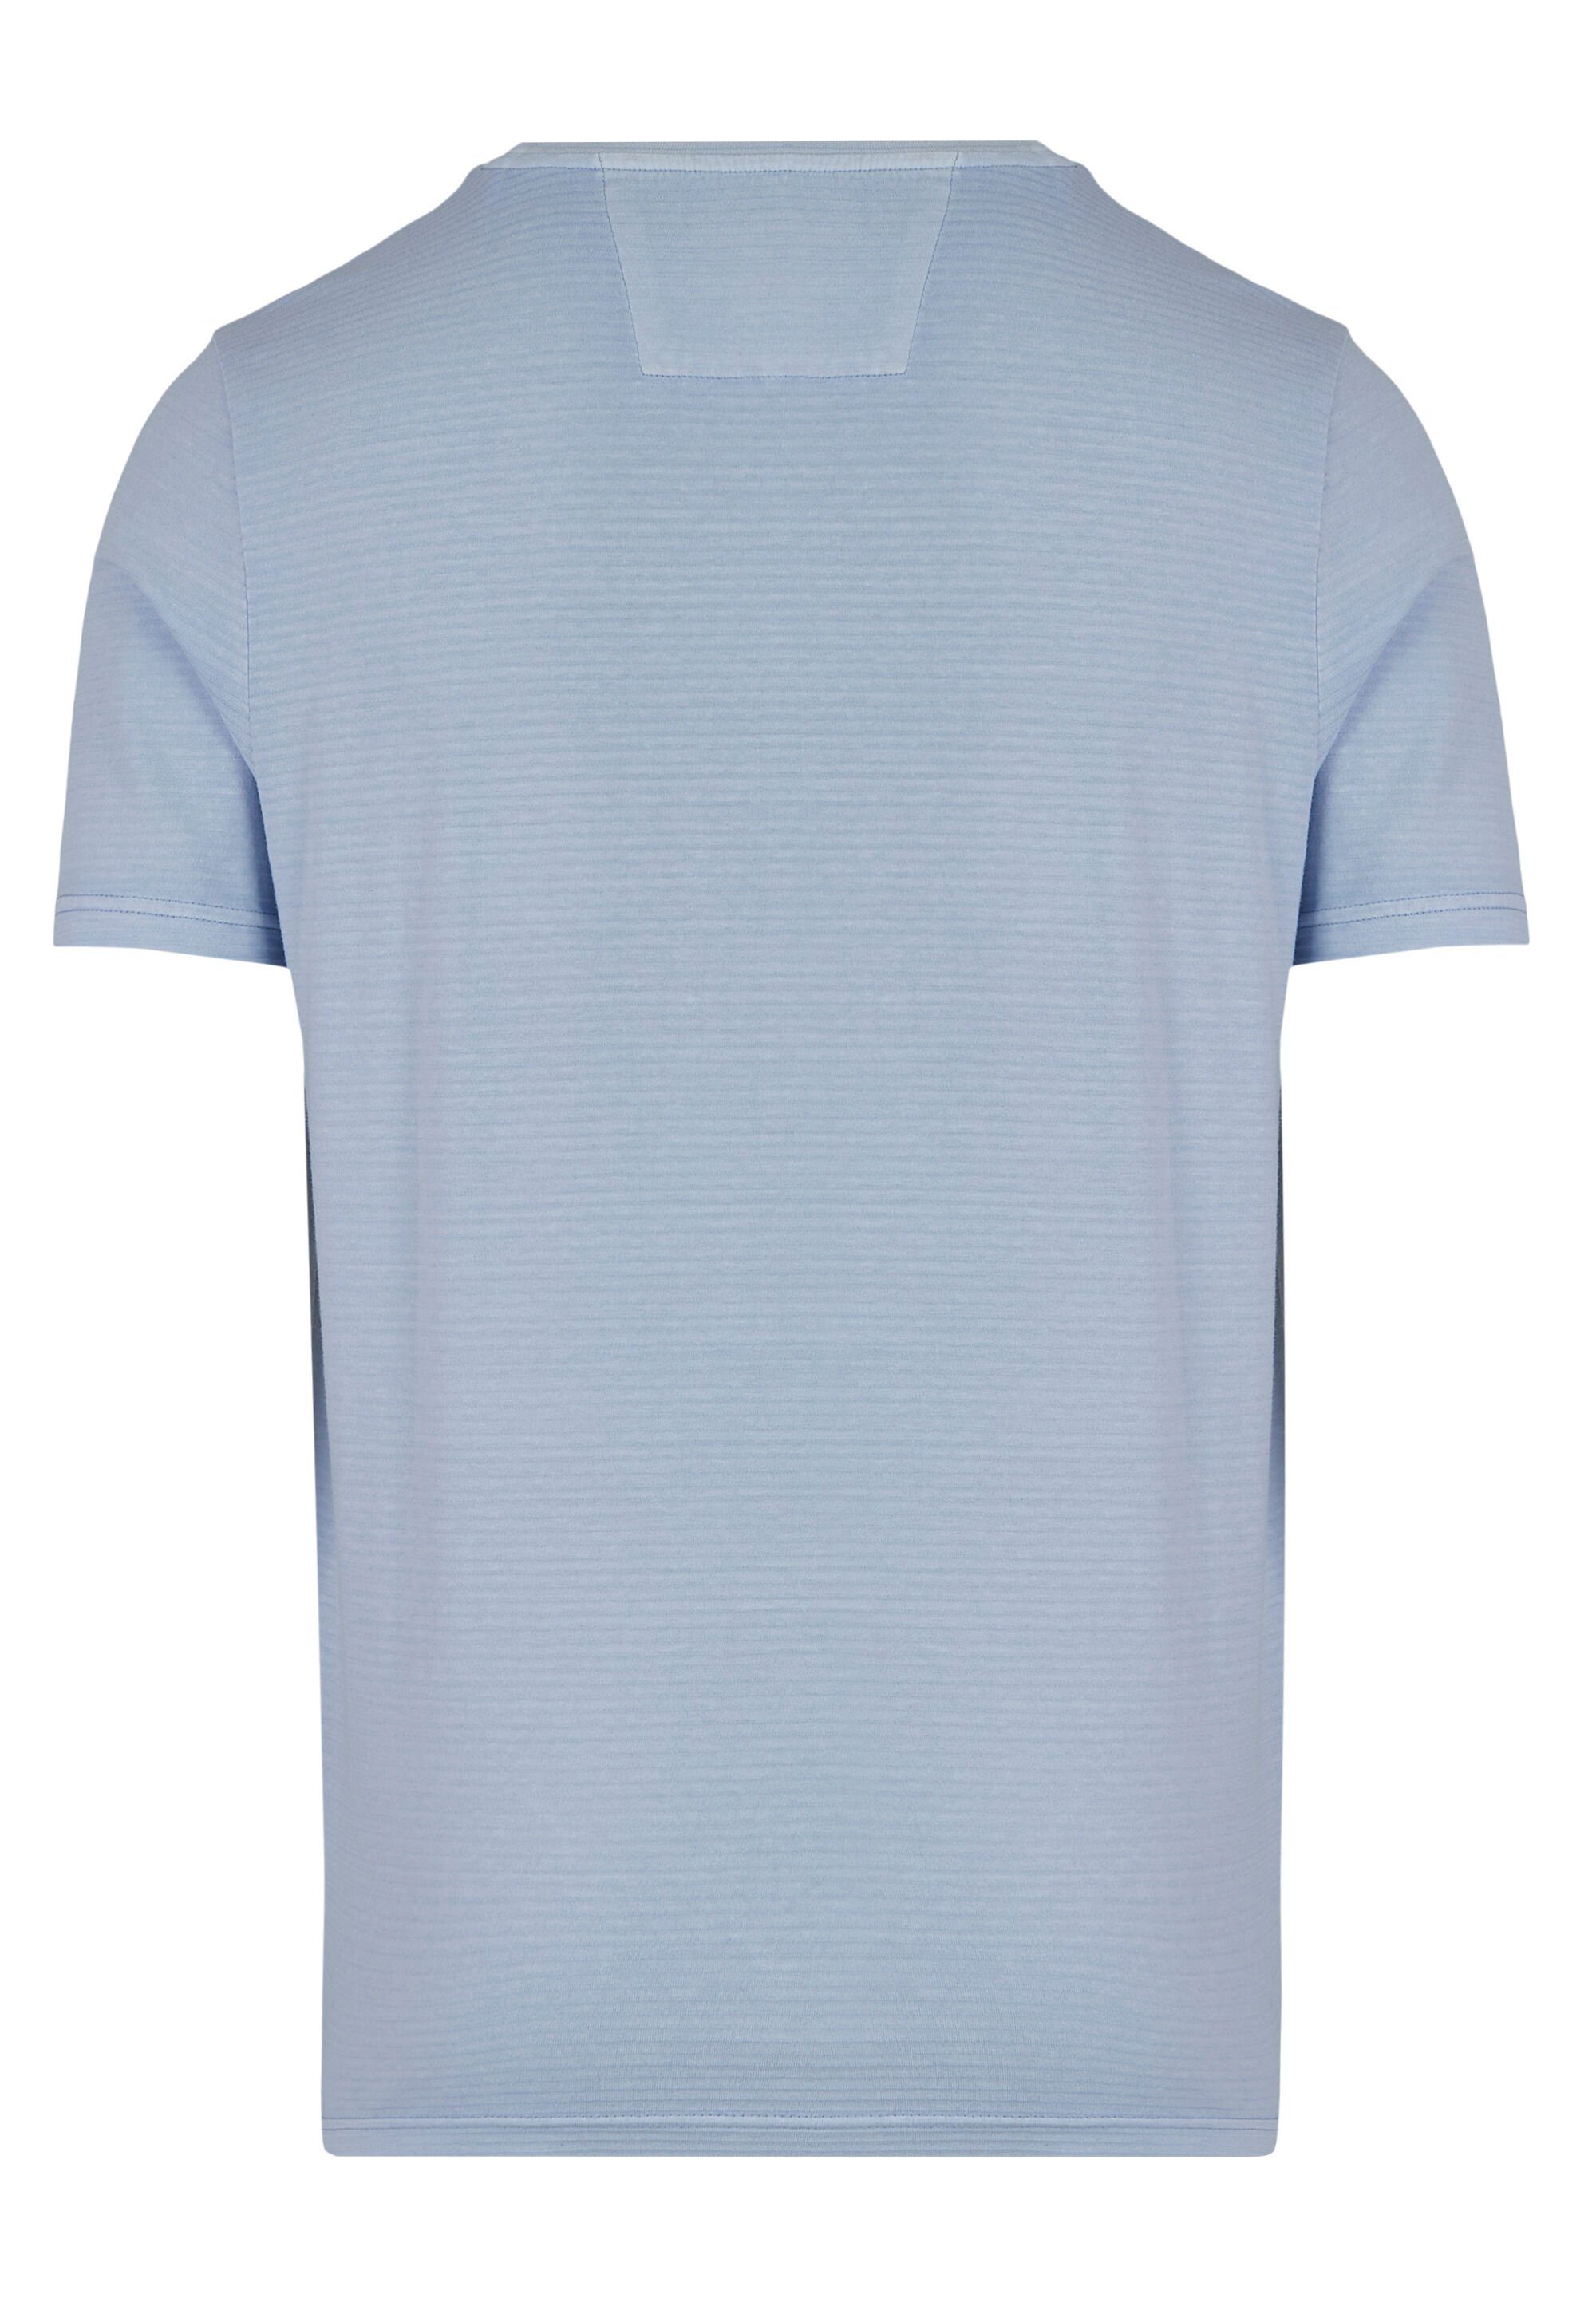 sky blue HECHTER Brusttasche PARIS T-Shirt